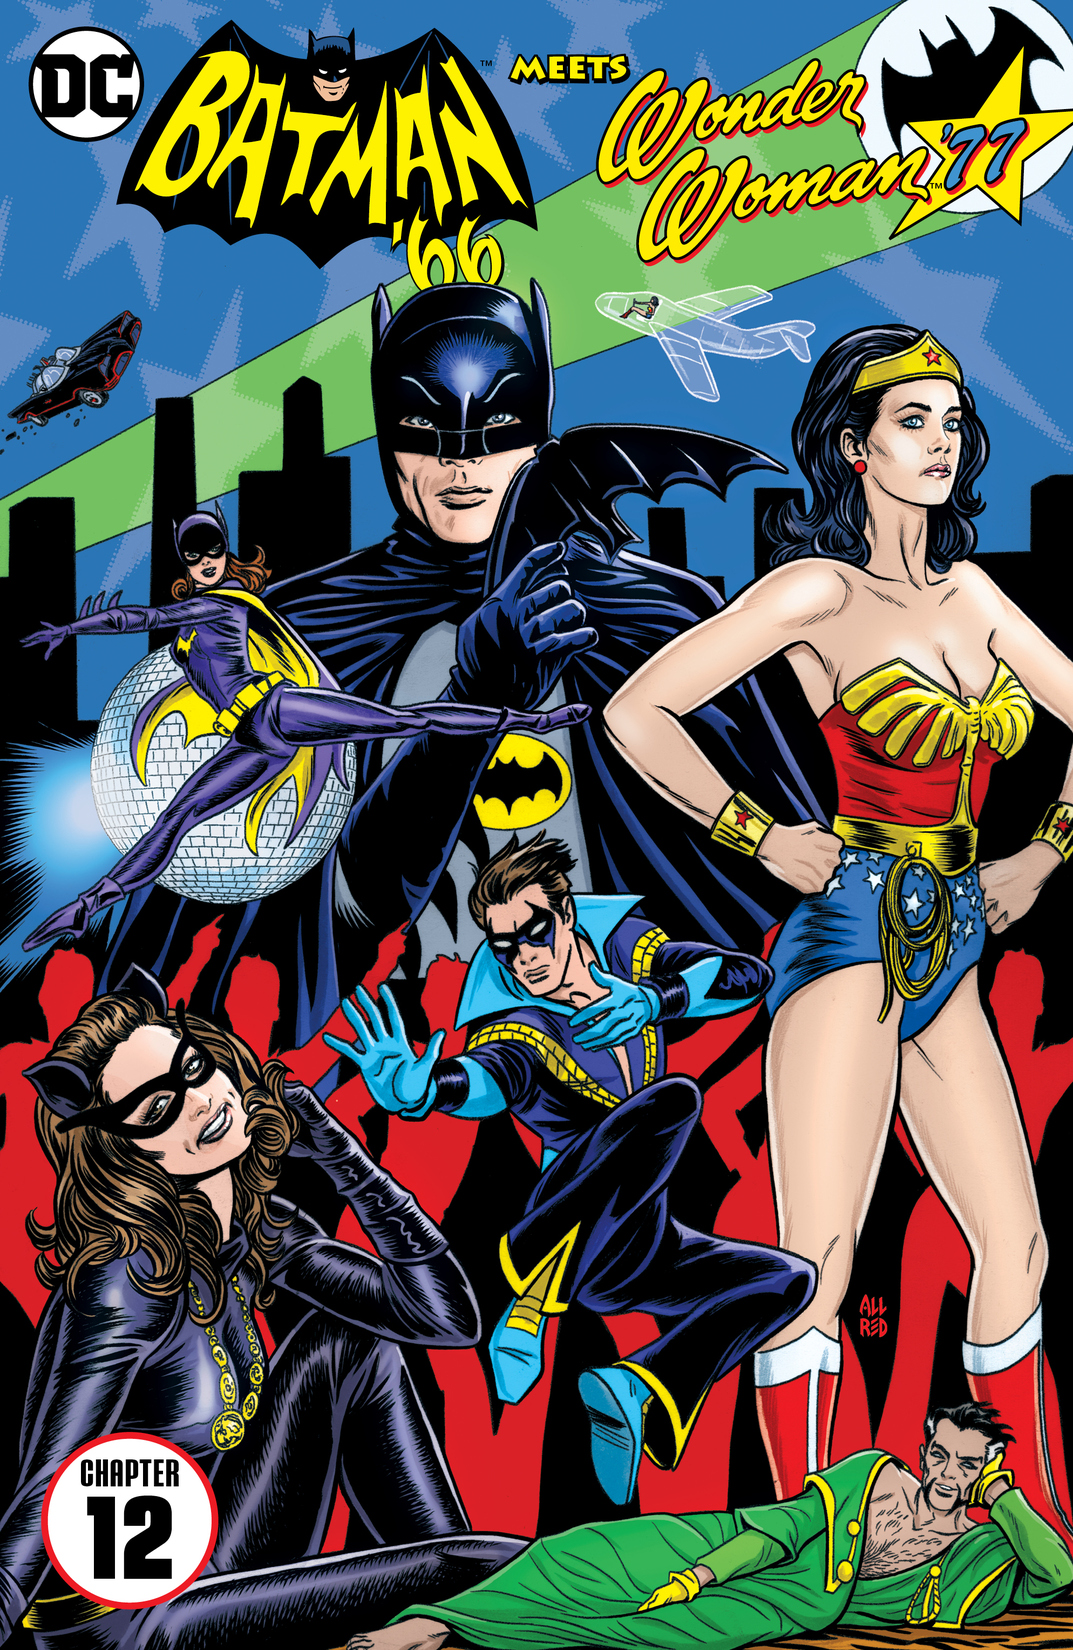 Batman '66 Meets Wonder Woman '77 #12 preview images